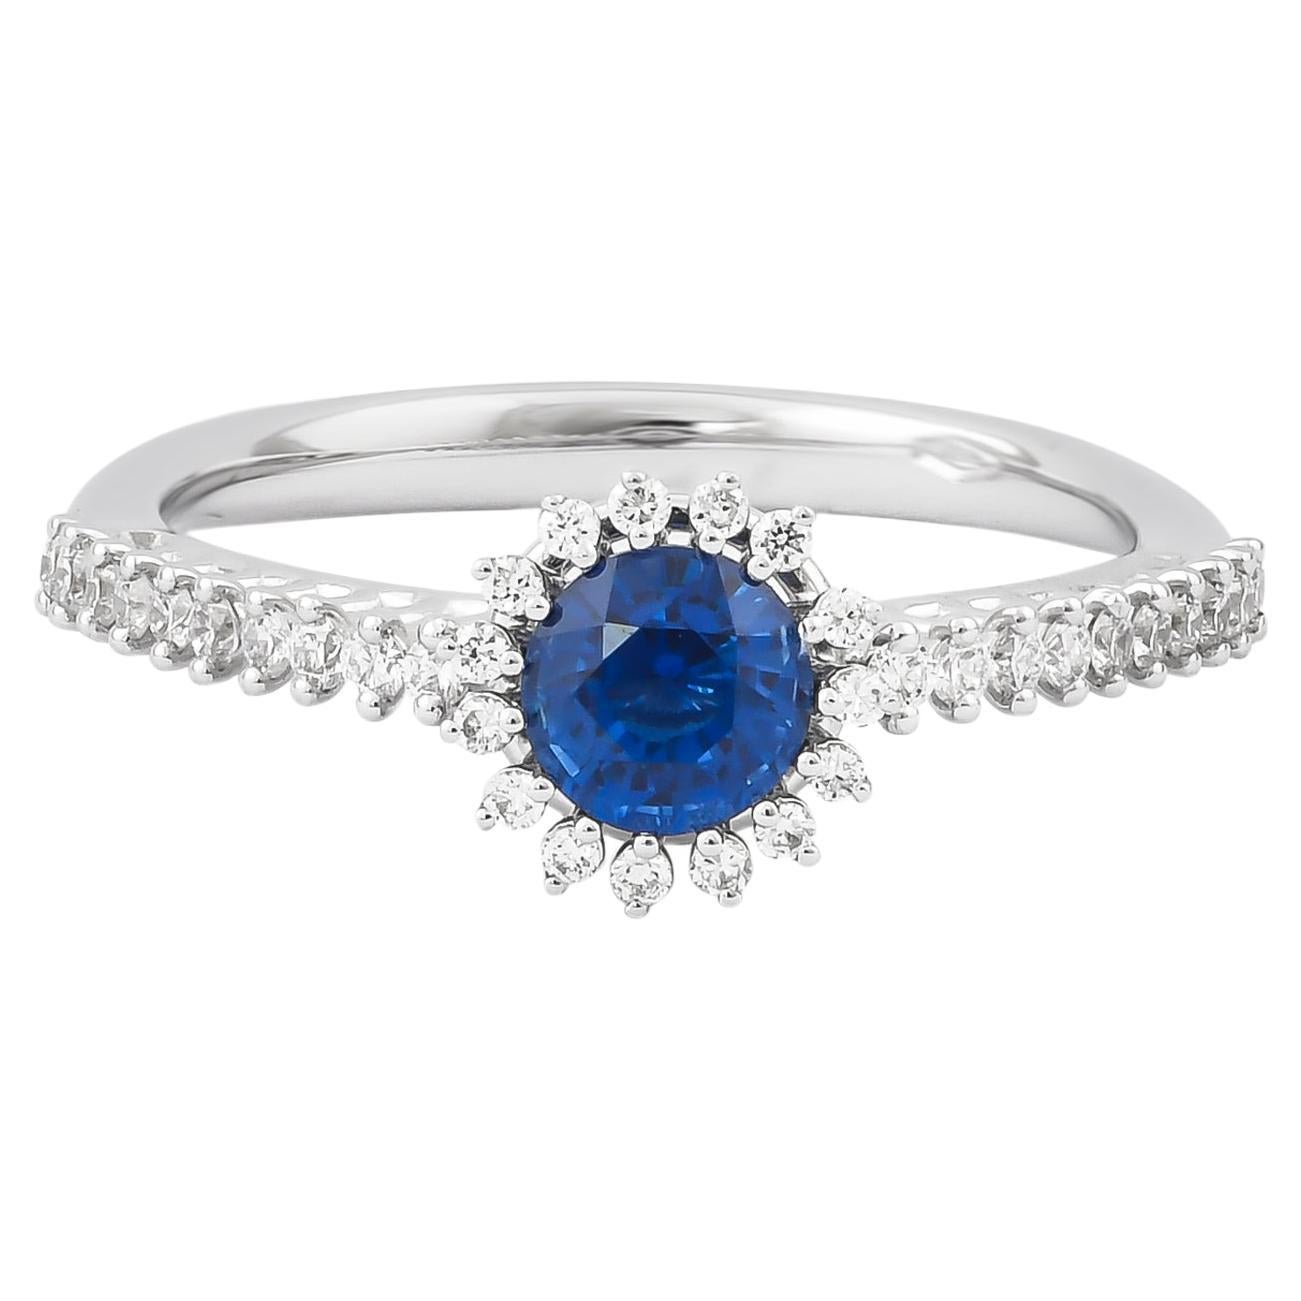 0.73 Carat Blue Sapphire Ring in 18 Karat White Gold